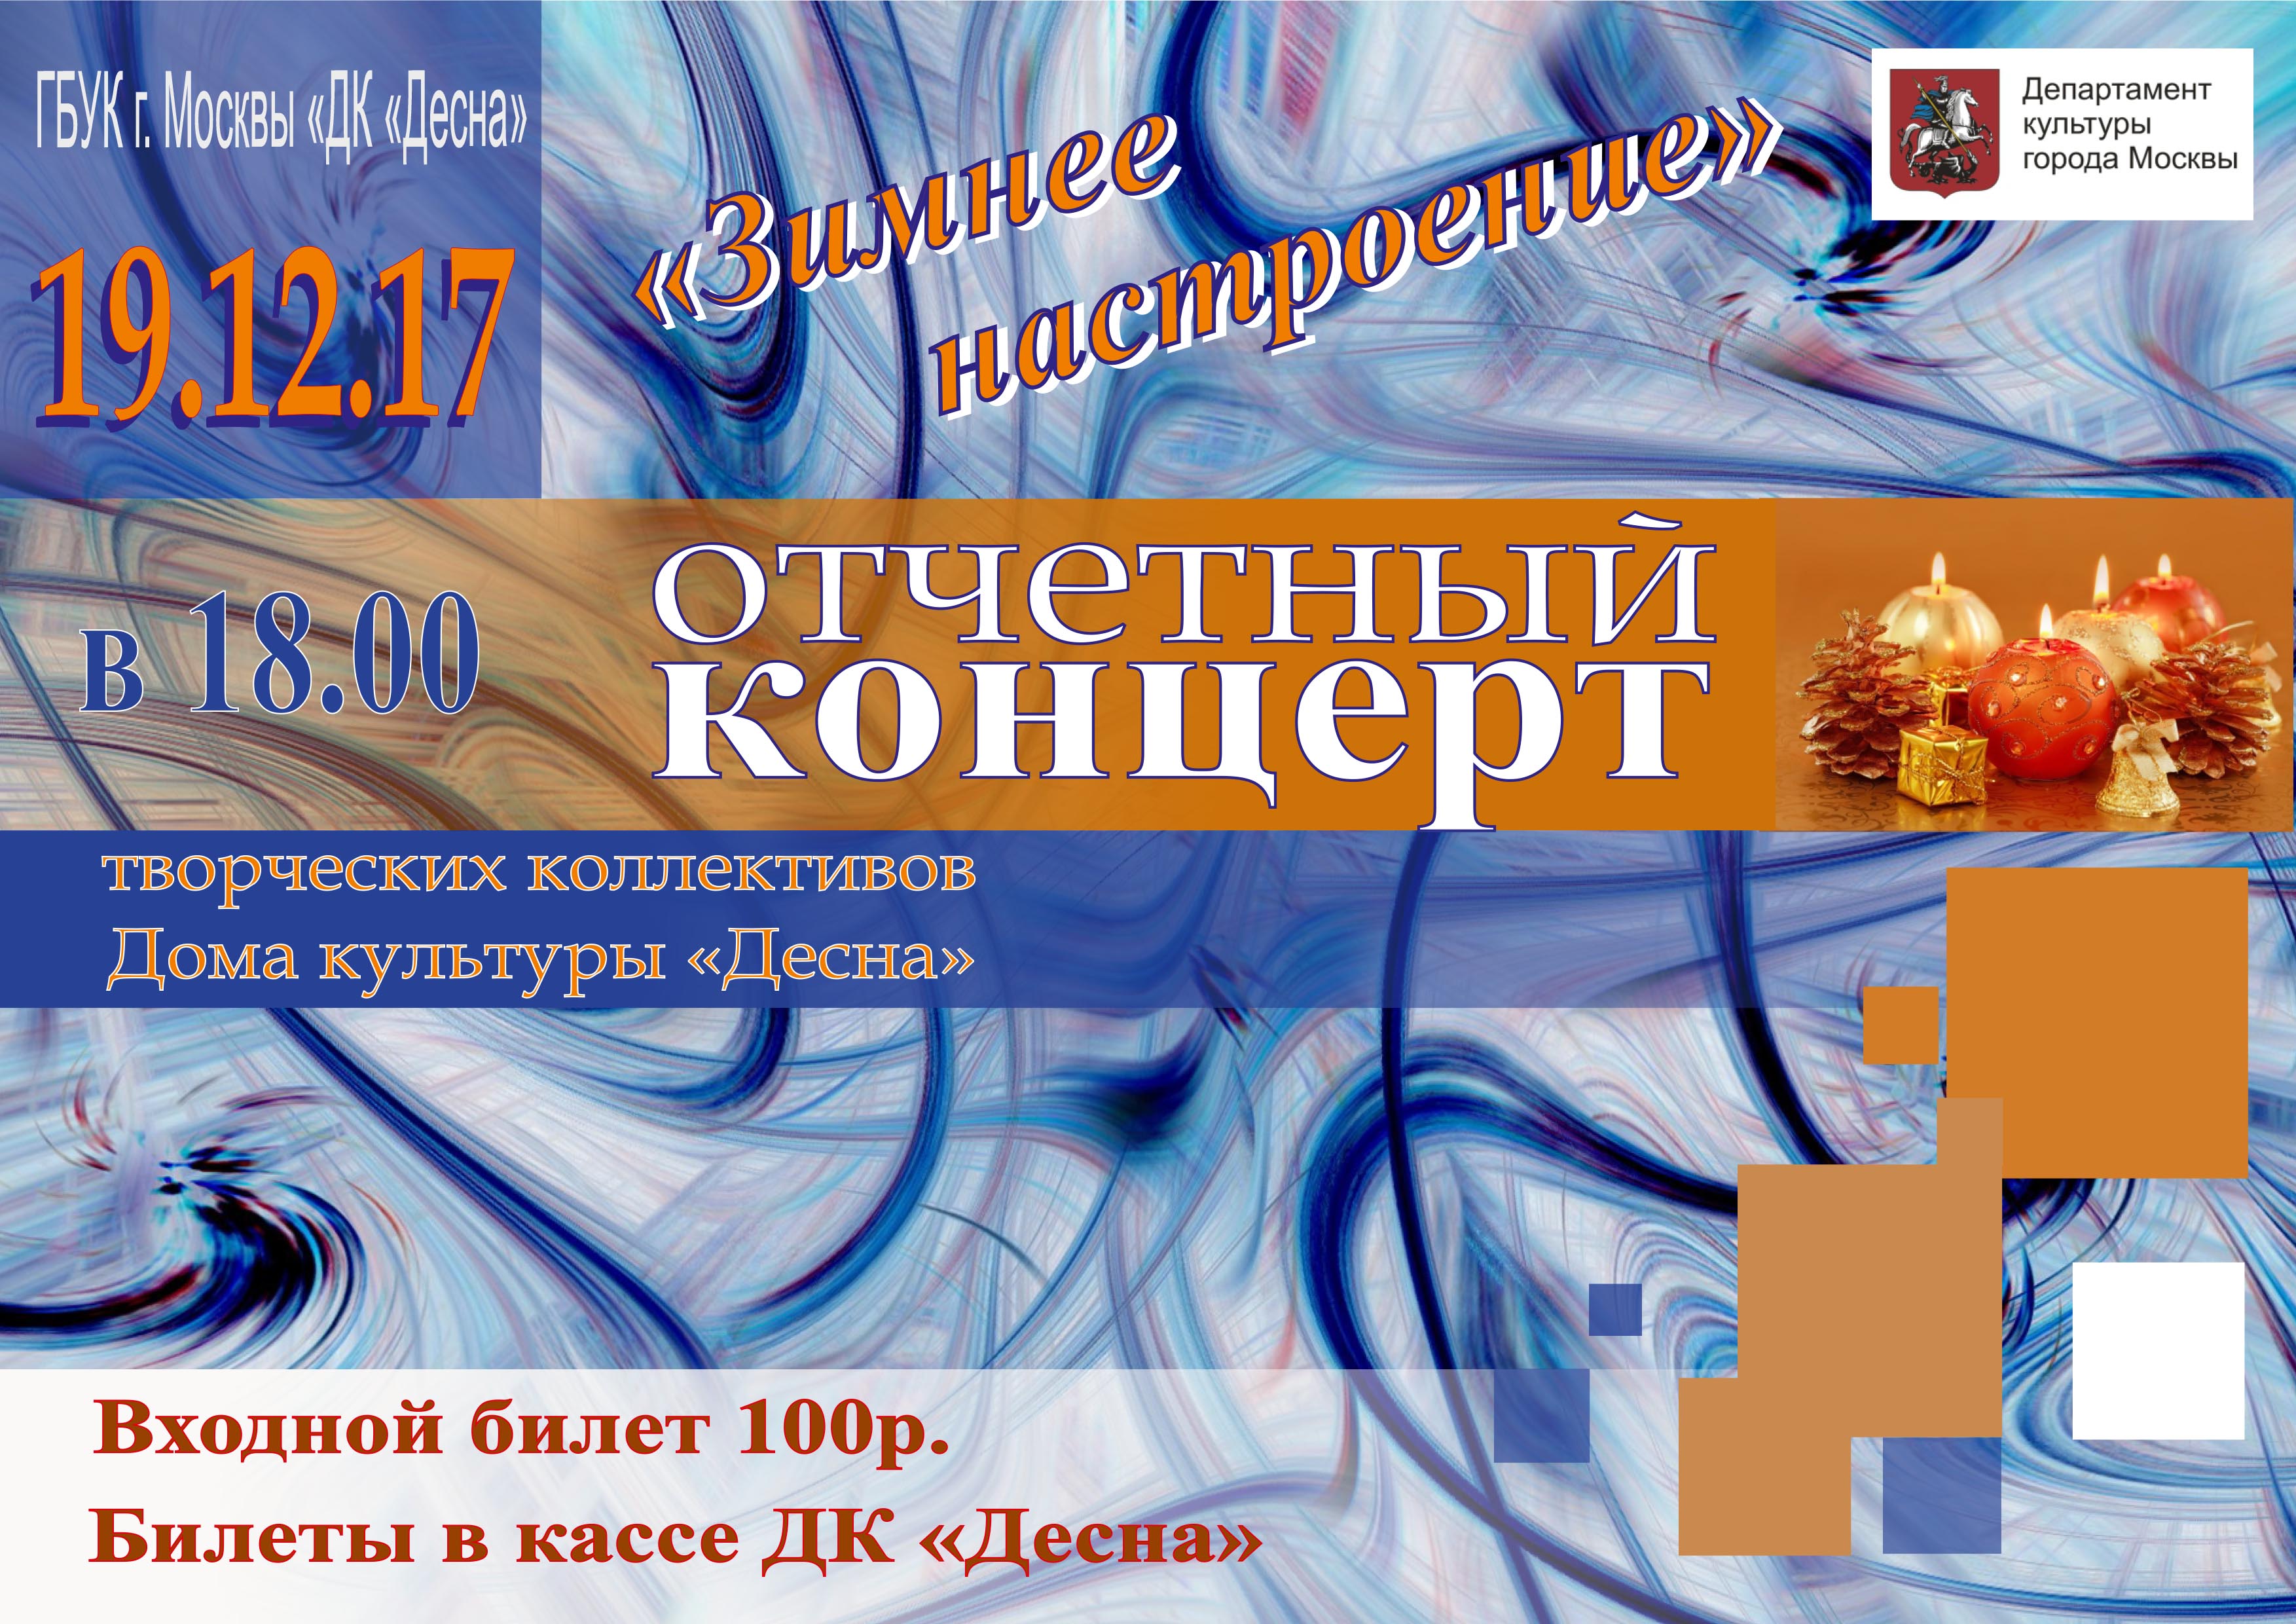 19 декабря в 18.00 состоится отчетный концерт творческих коллективов Дома культуры "Десна"